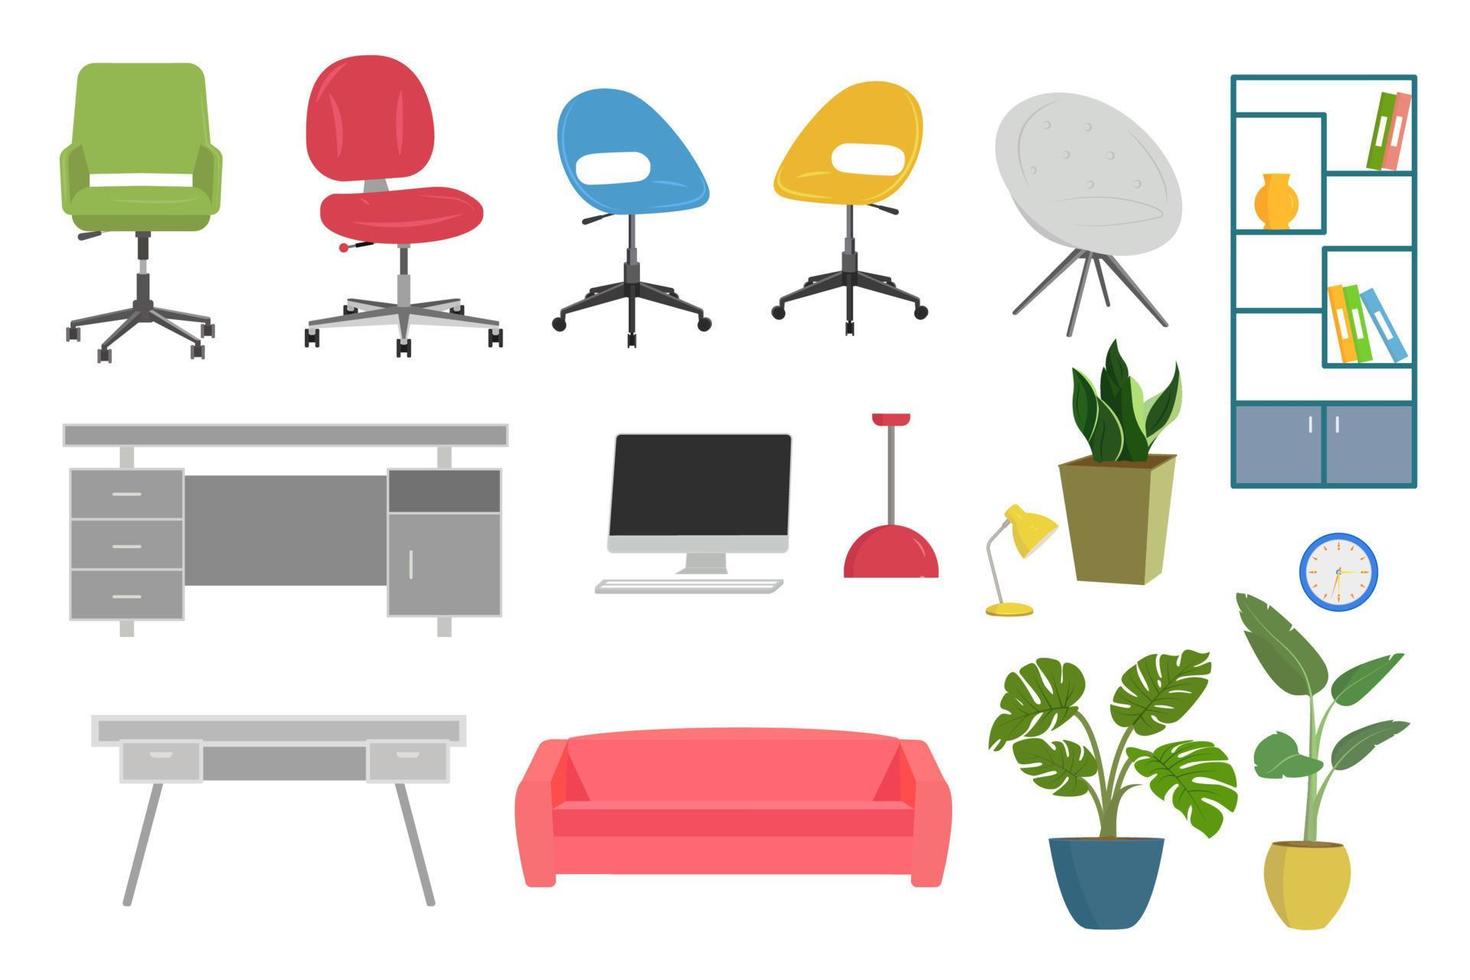 kontor möbel samling med bord, stolar, lampor, växter och dator. vektor